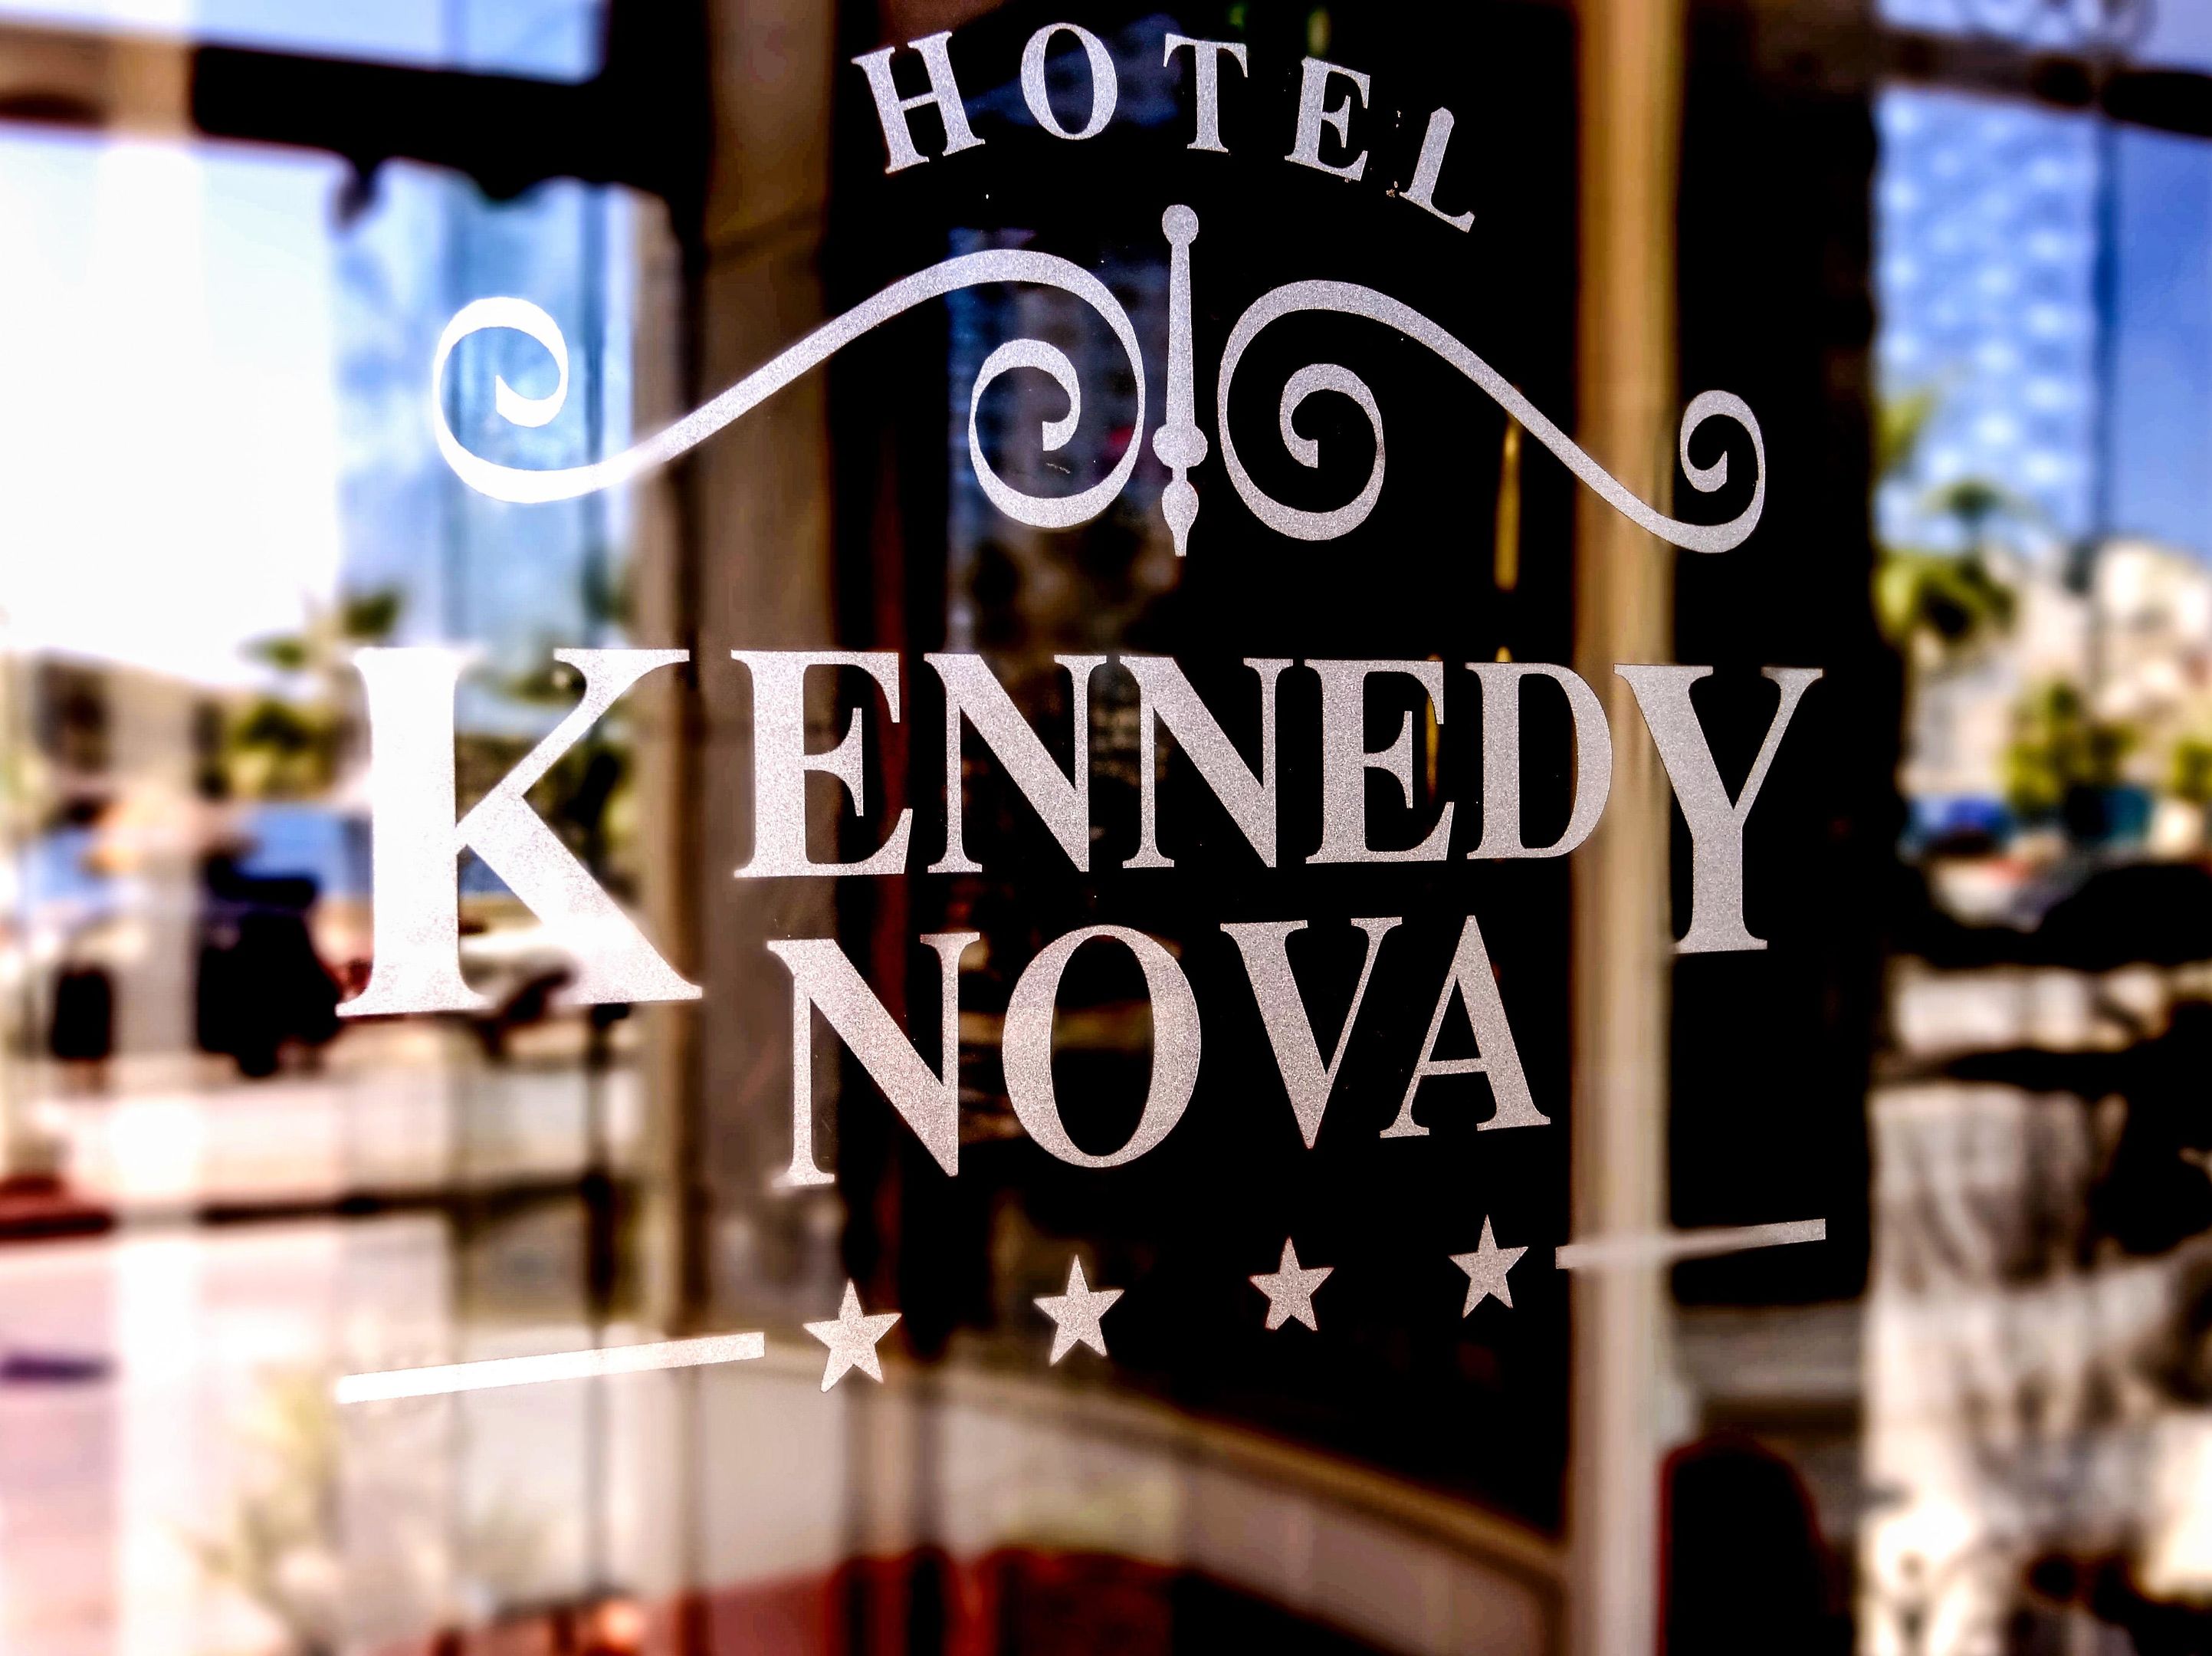 The Kennedy Nova